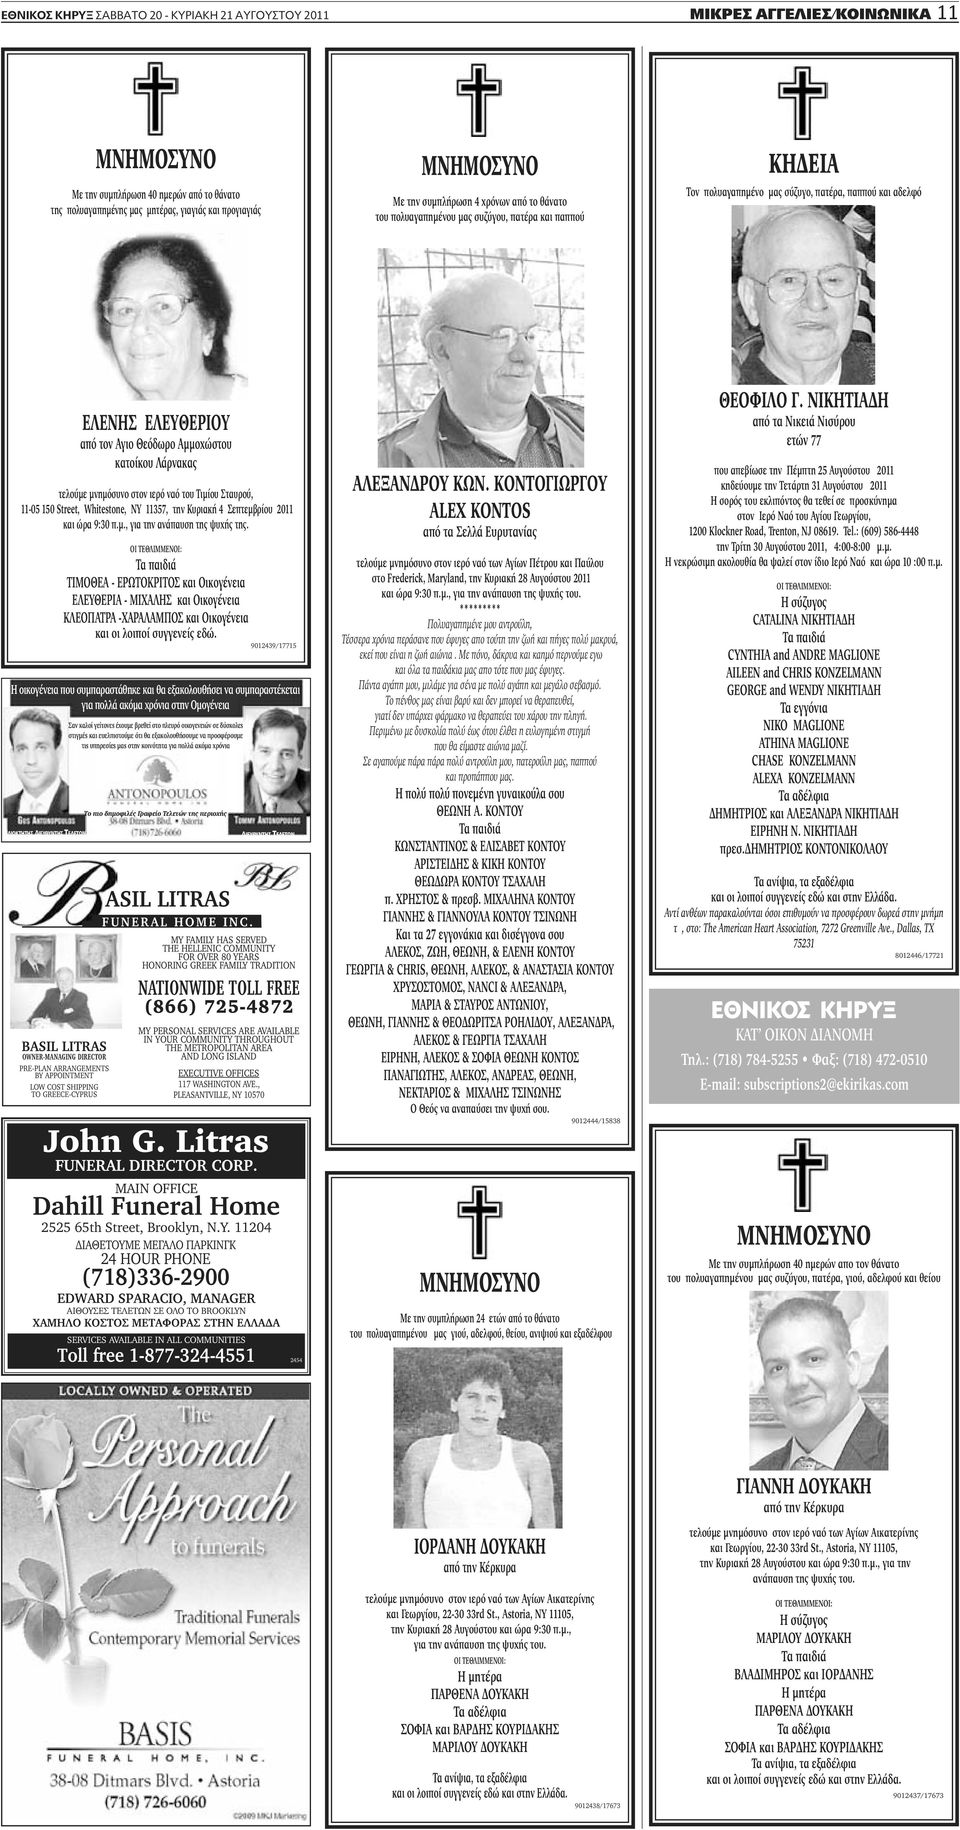 Αμμοχώστου κατοίκου Λάρνακας τελούμε μνημόσυνο στον ιερό ναό του Τιμίου Σταυρού, 11-05 150 Street, Whitestone, NY 11357, την Κυριακή 4 Σεπτεμβρίου 2011 και ώρα 9:30 π.μ., για την ανάπαυση της ψυχής της.